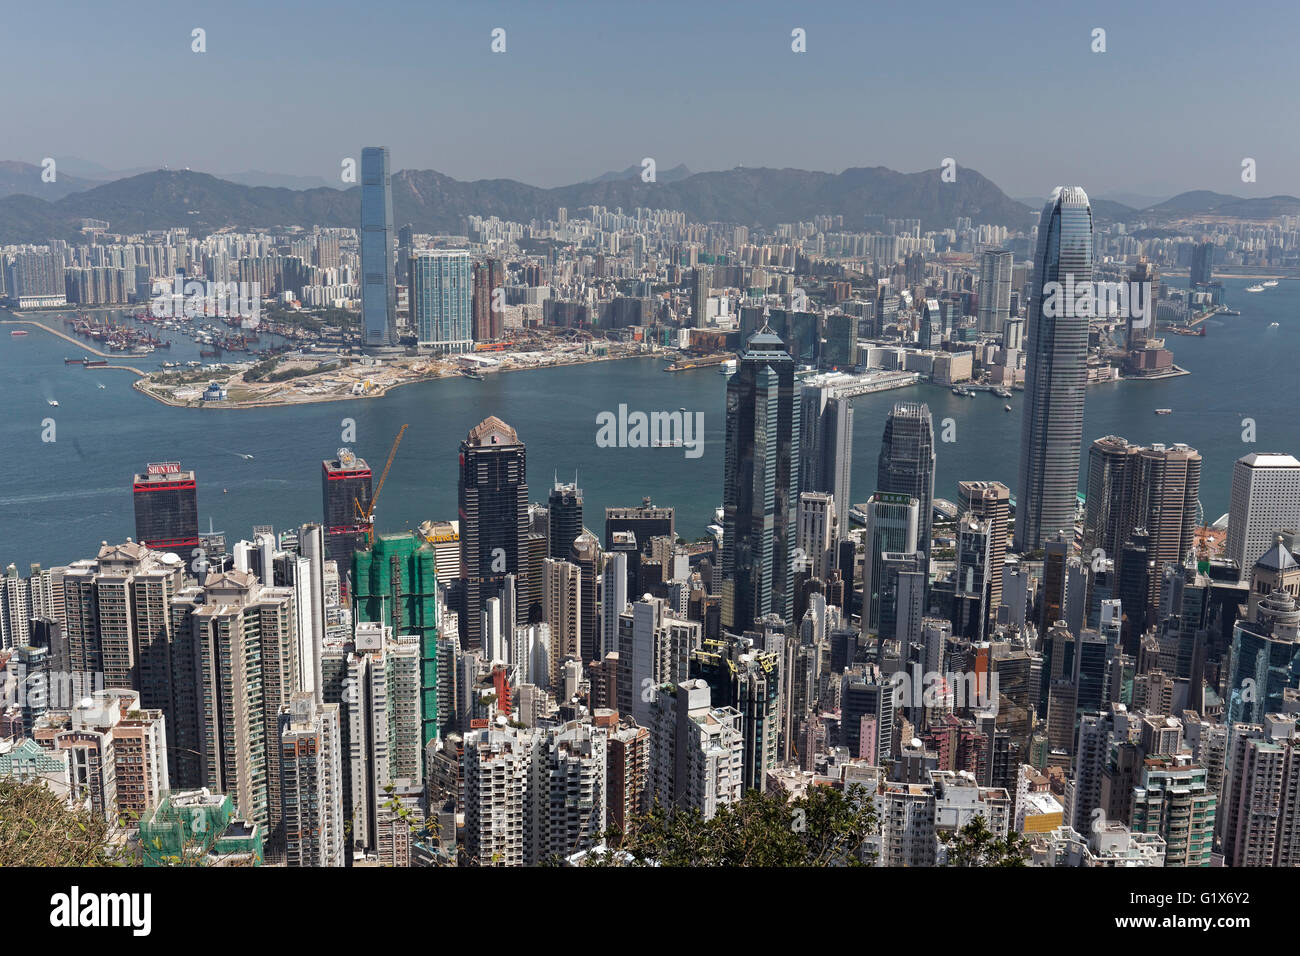 Rascacielos, rascacielos en el distrito Central, el puerto Victoria y Kowloon oeste, vista desde el pico, pico Victoria Foto de stock